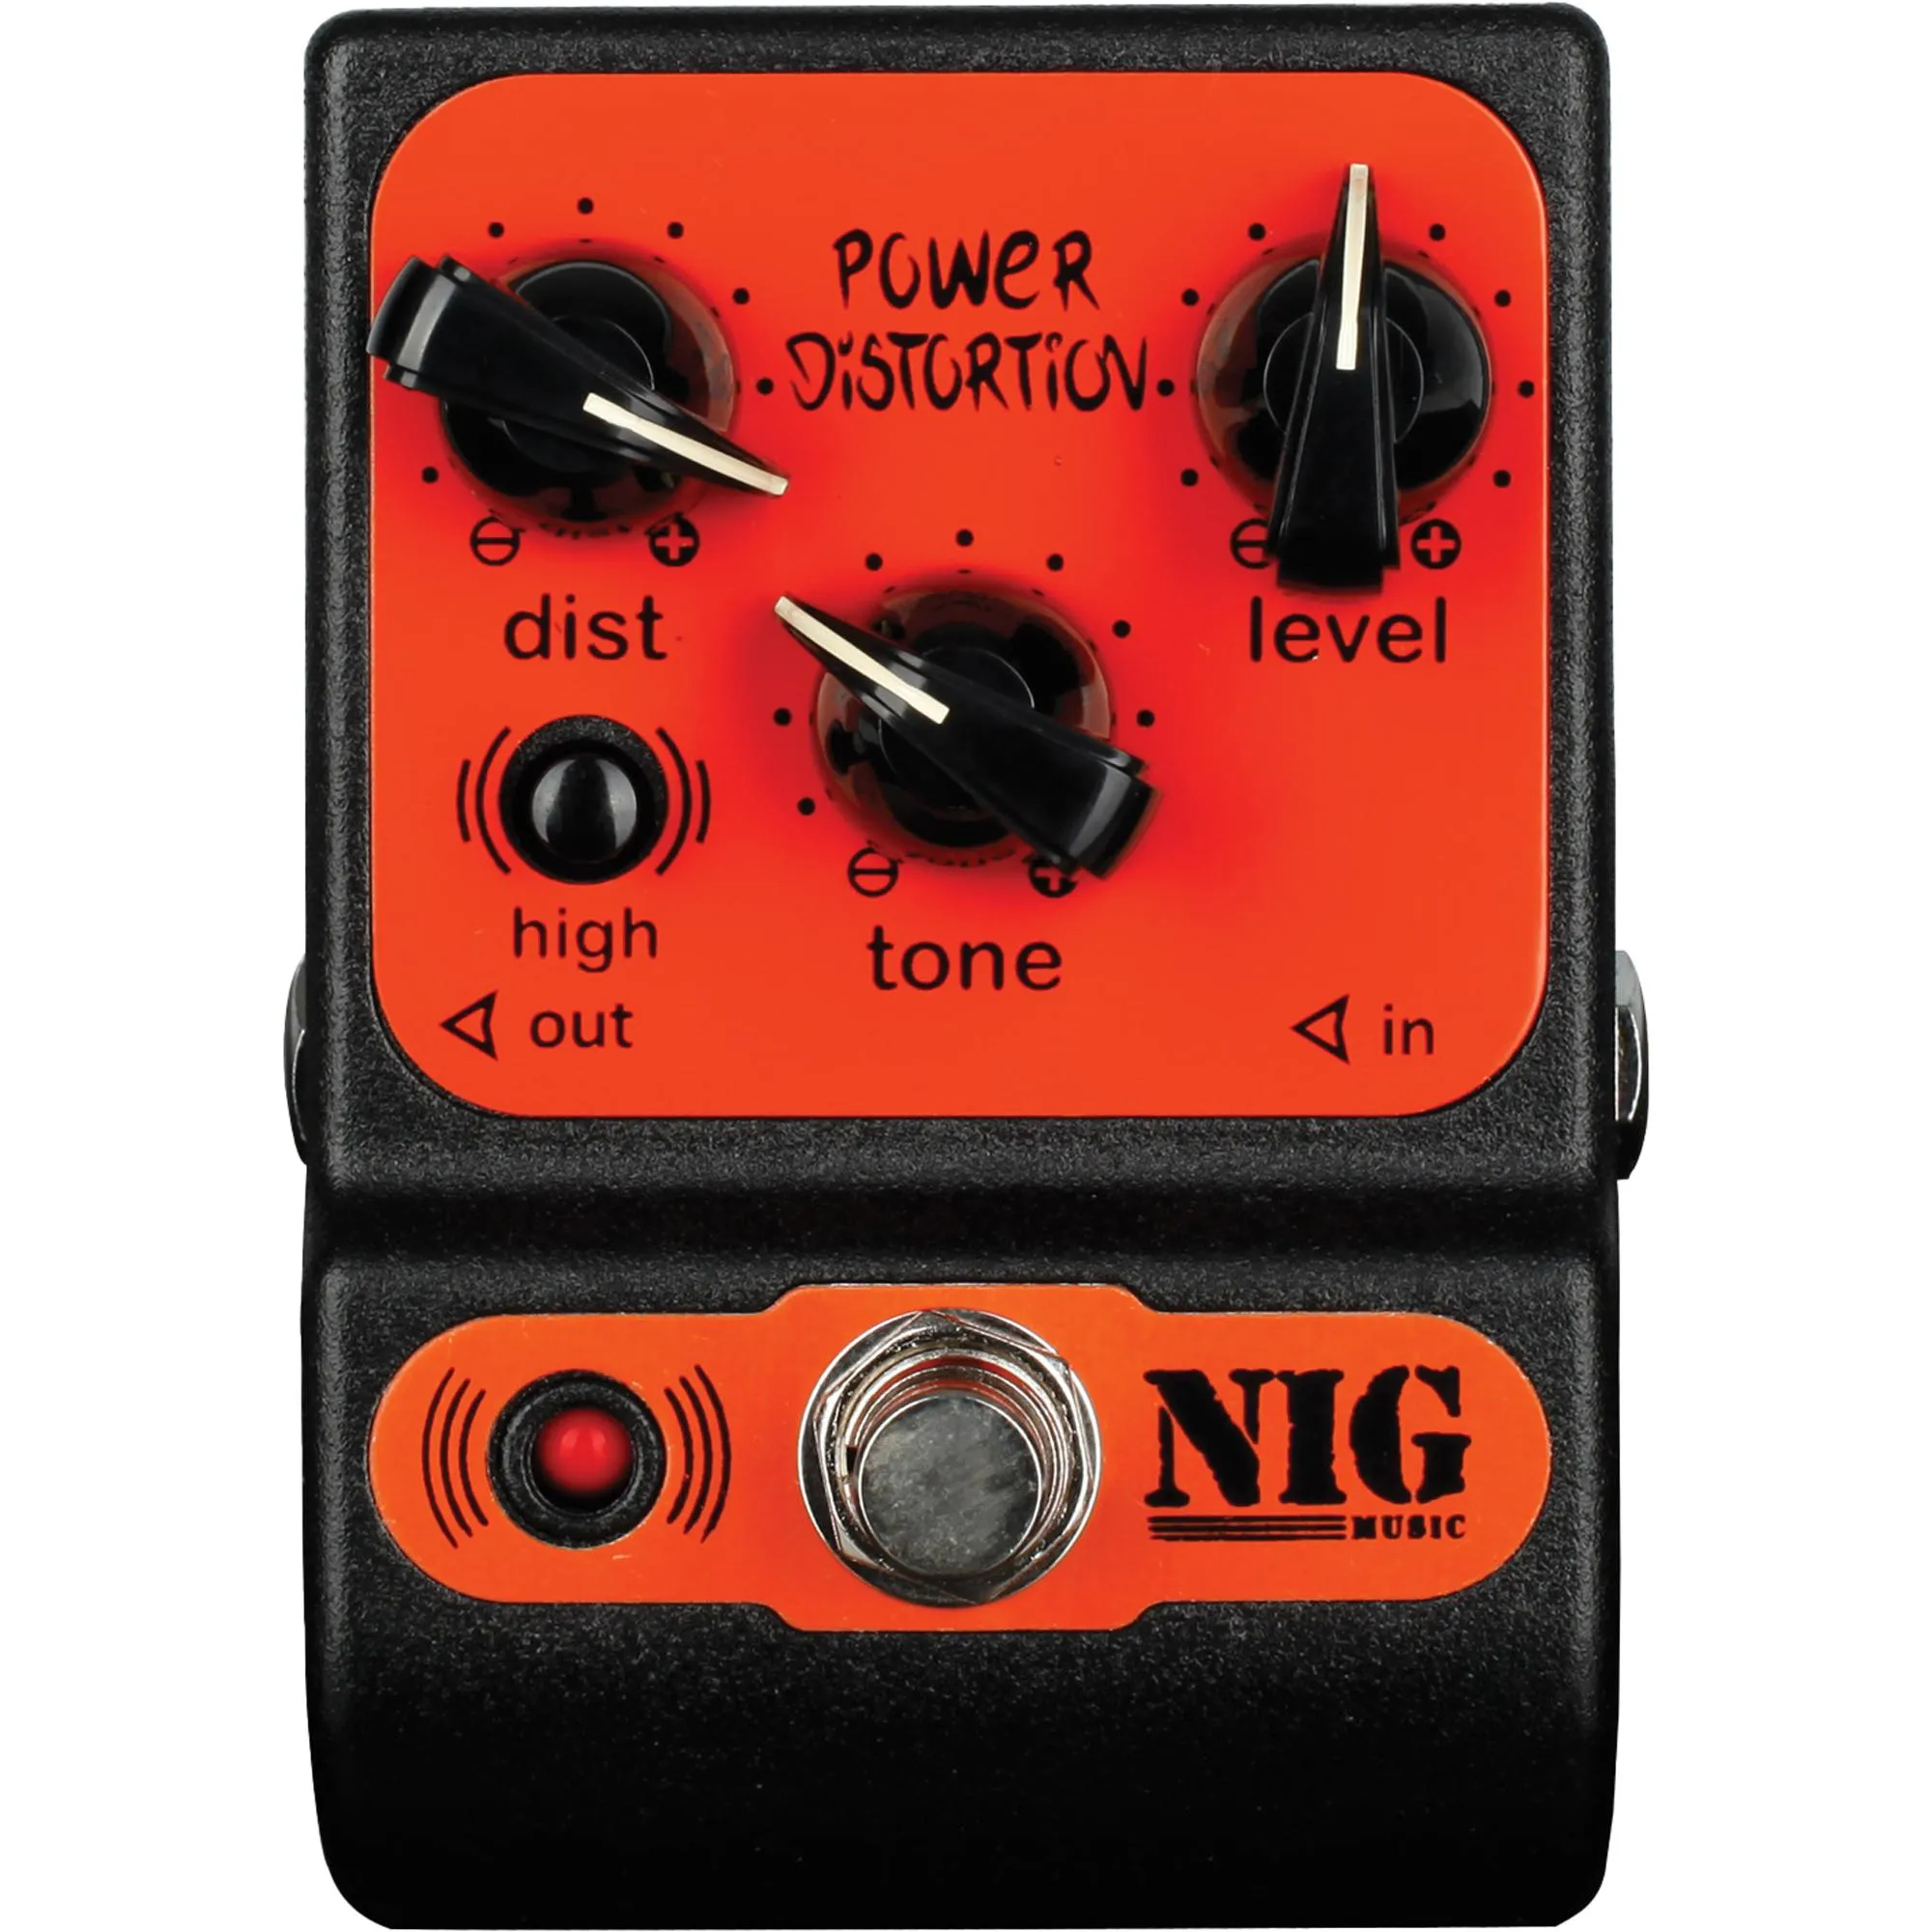 Pedal Analógico Power Distortion NIG (82190)